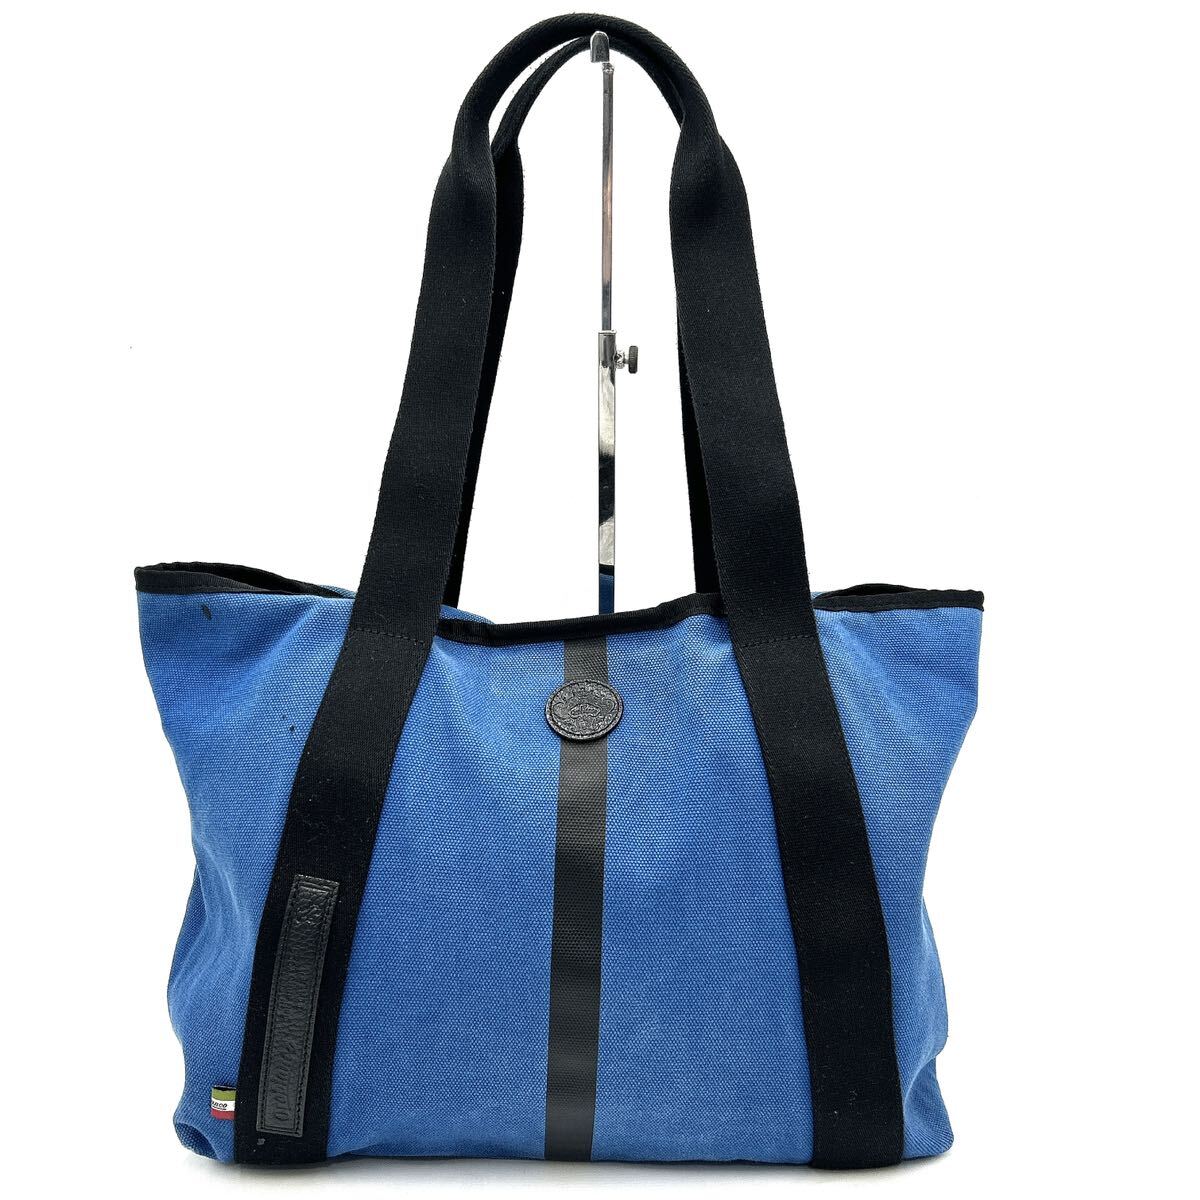 C @ 高級感溢れる '人気モデル' OROBIANCO オロビアンコ 高品質 キャンバス地 トートバッグ 手提げ 肩掛け鞄 ハンドバッグ 婦人鞄 BLUE の画像1